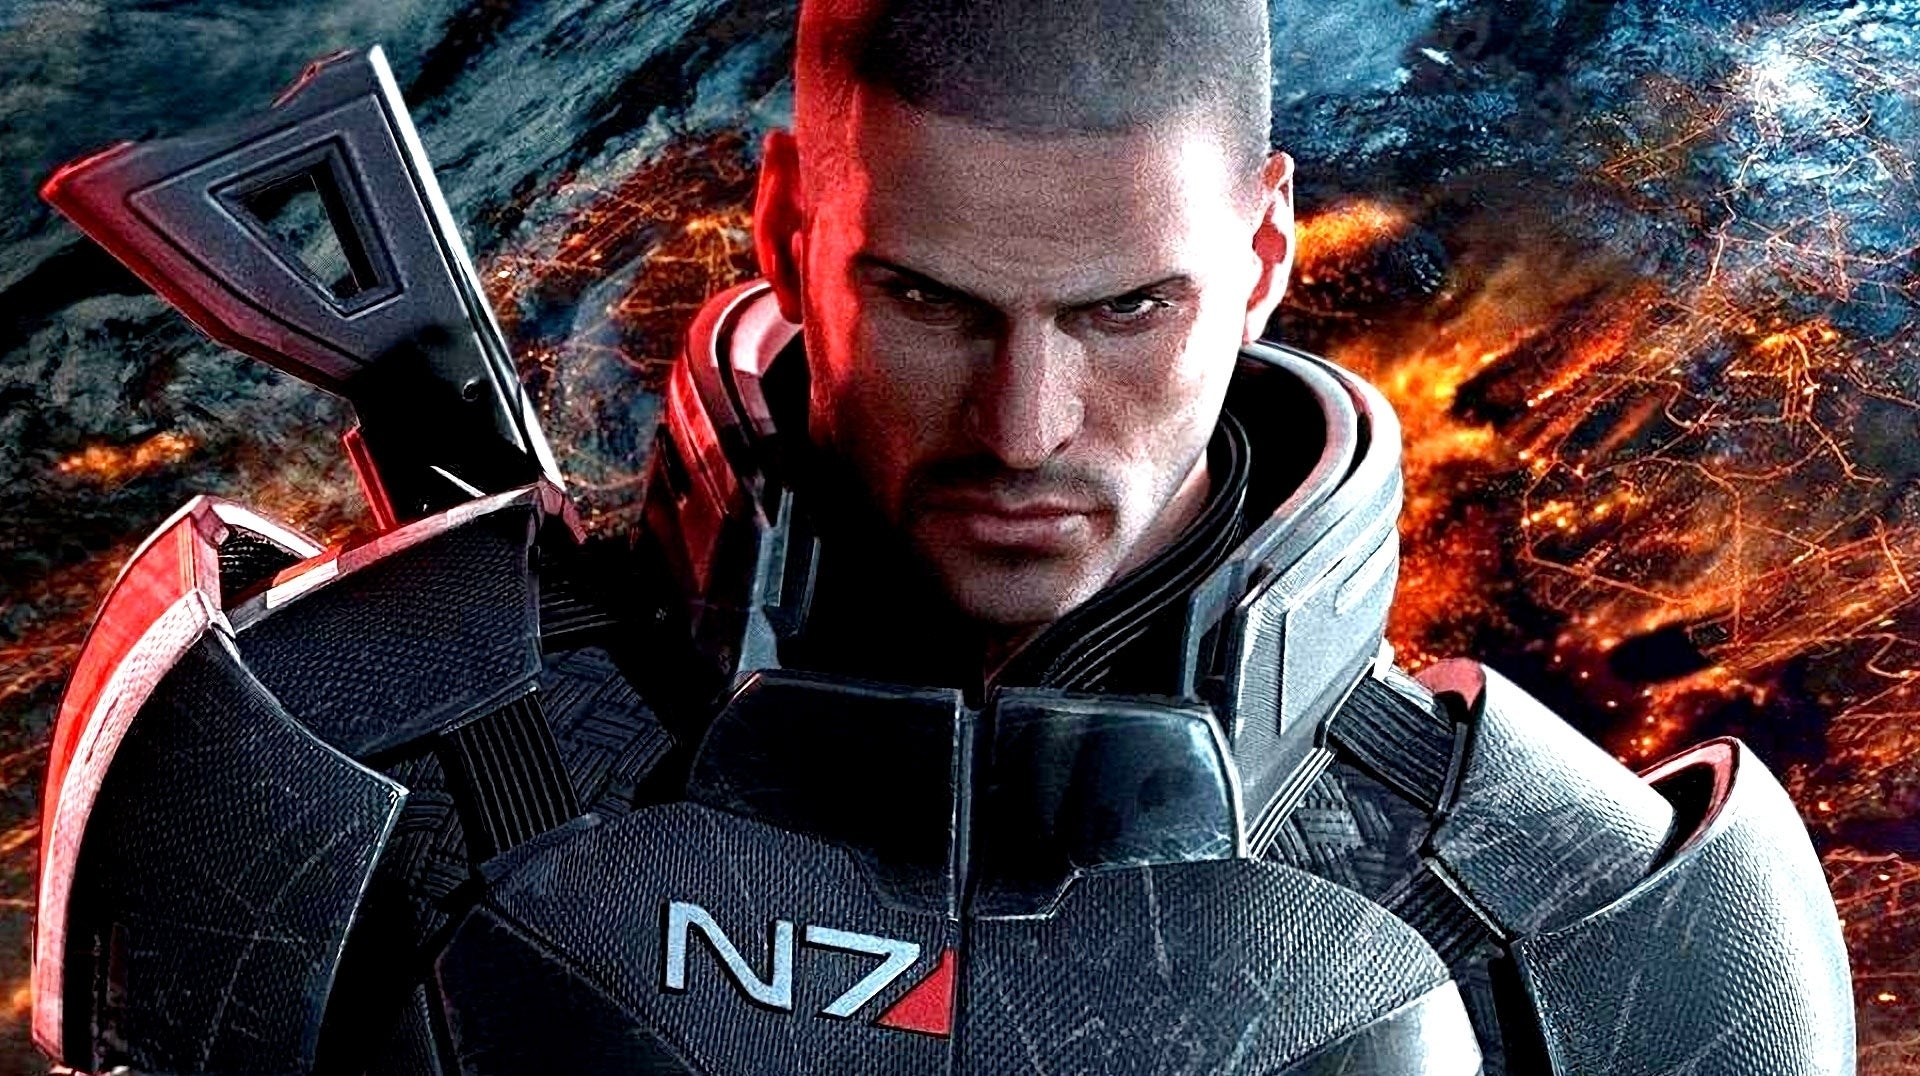 Immagine di Mass Effect 3 immaginato in un finale alternativo e commovente